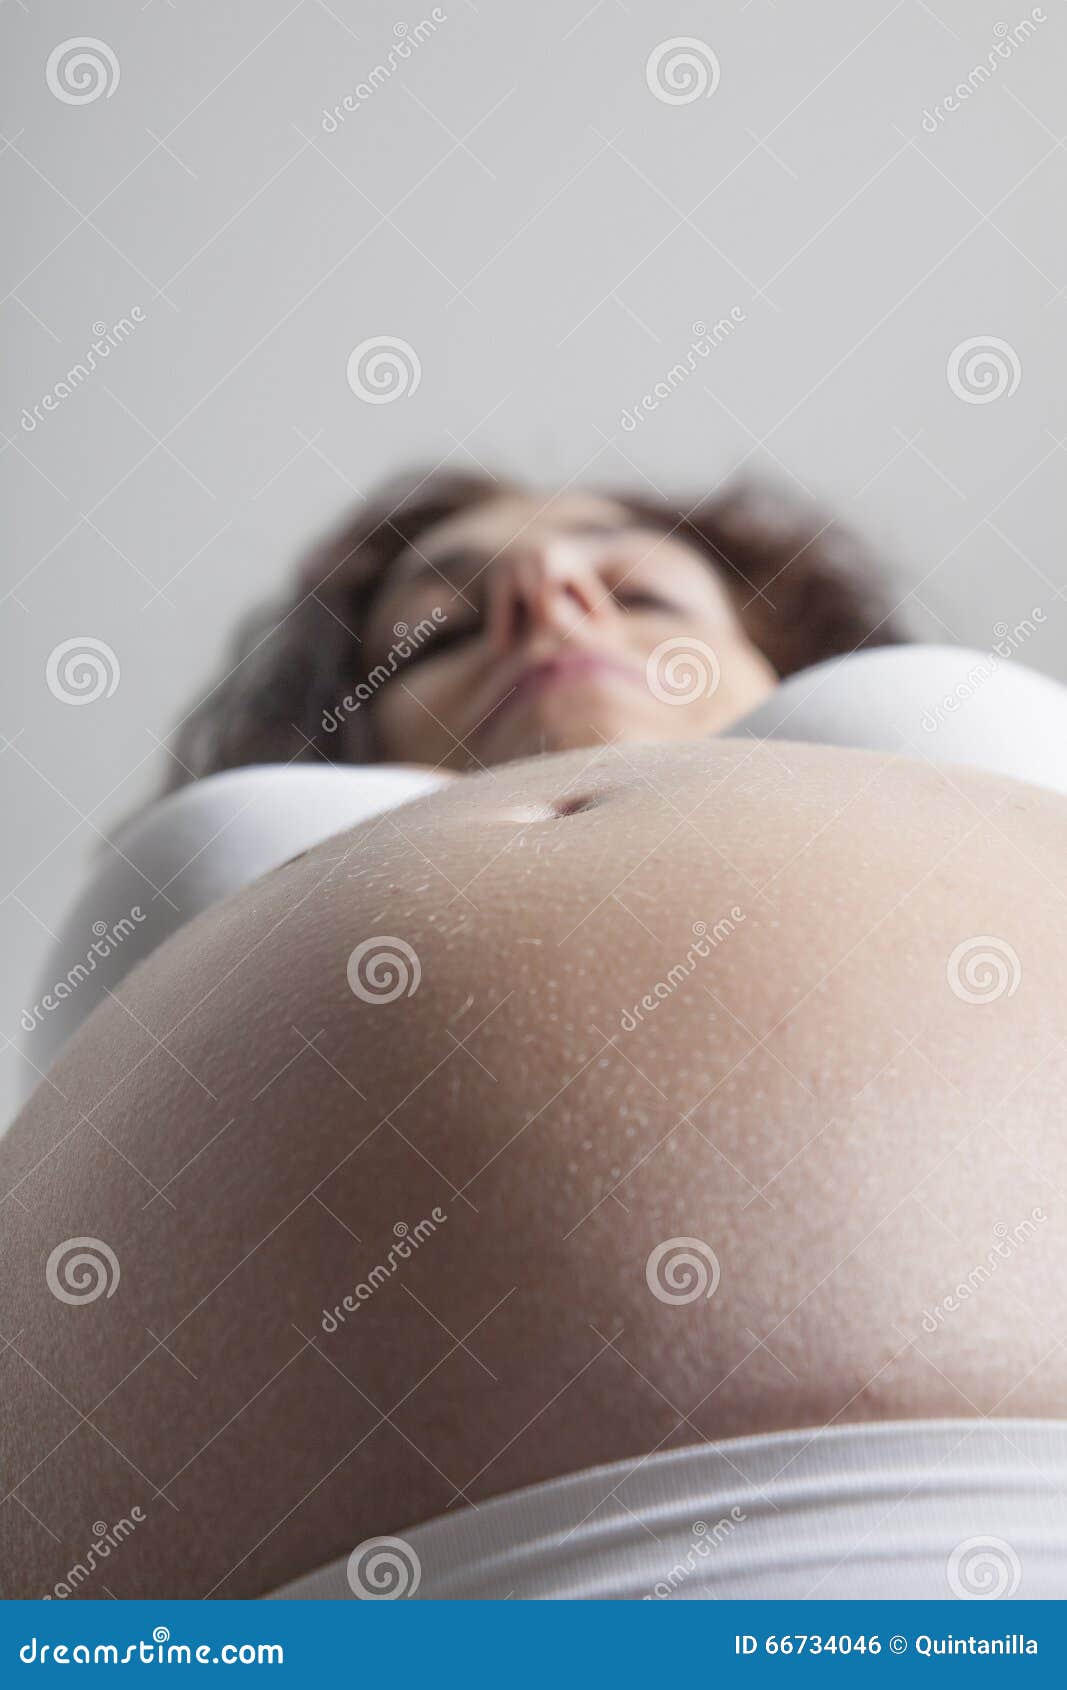 Ombligo del vientre desnudo de la mujer embarazada con el sujetador blanco.